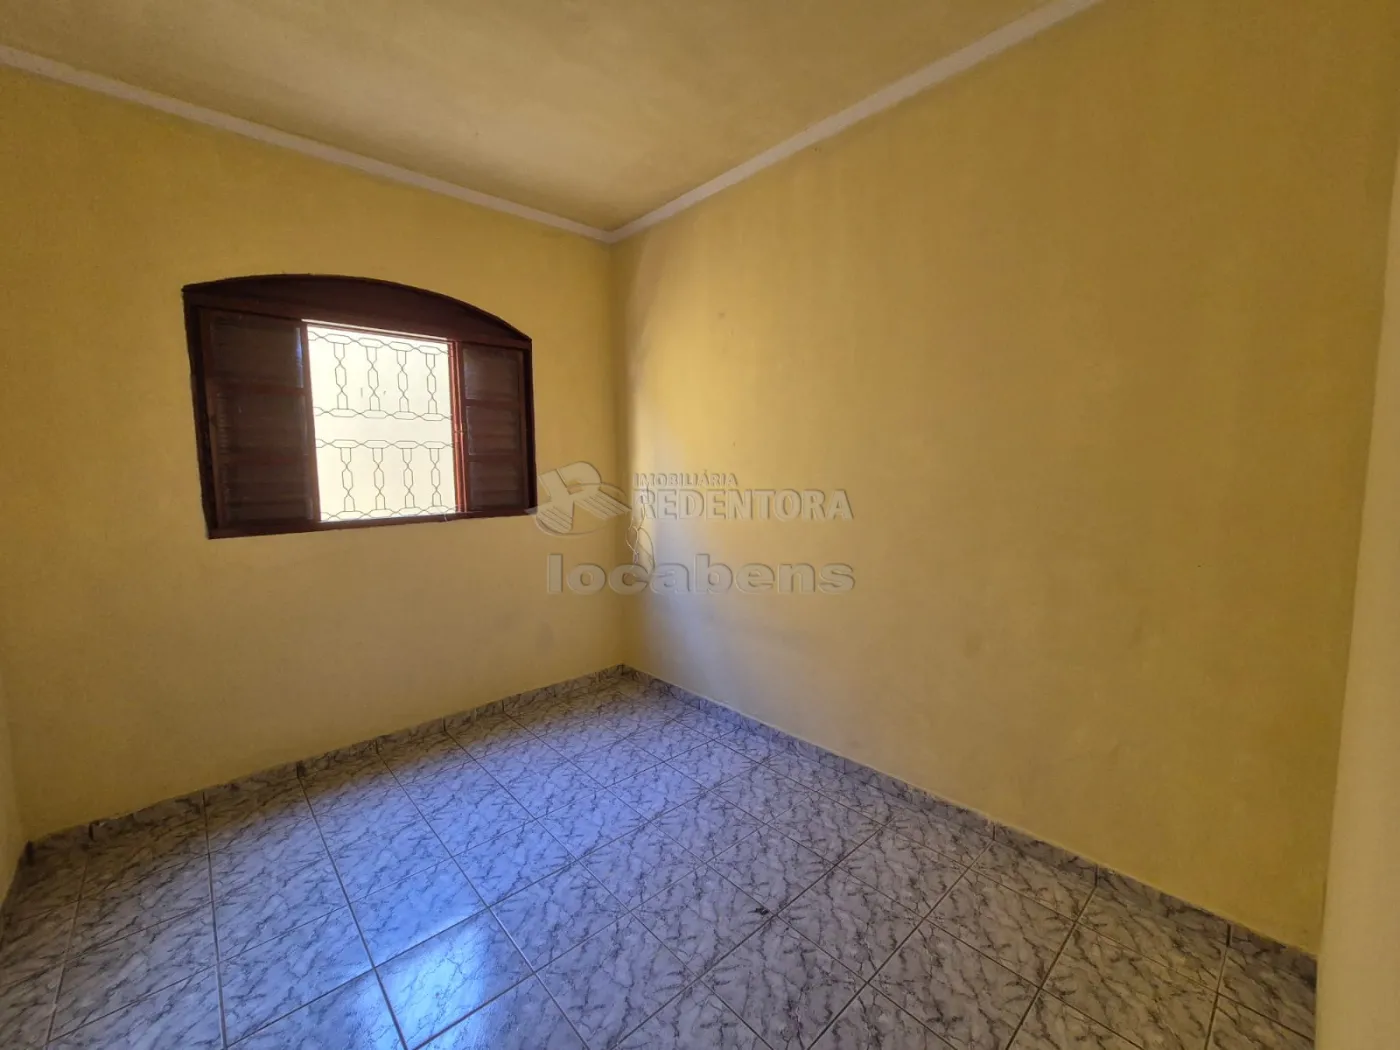 Alugar Casa / Padrão em São José do Rio Preto R$ 1.800,00 - Foto 7